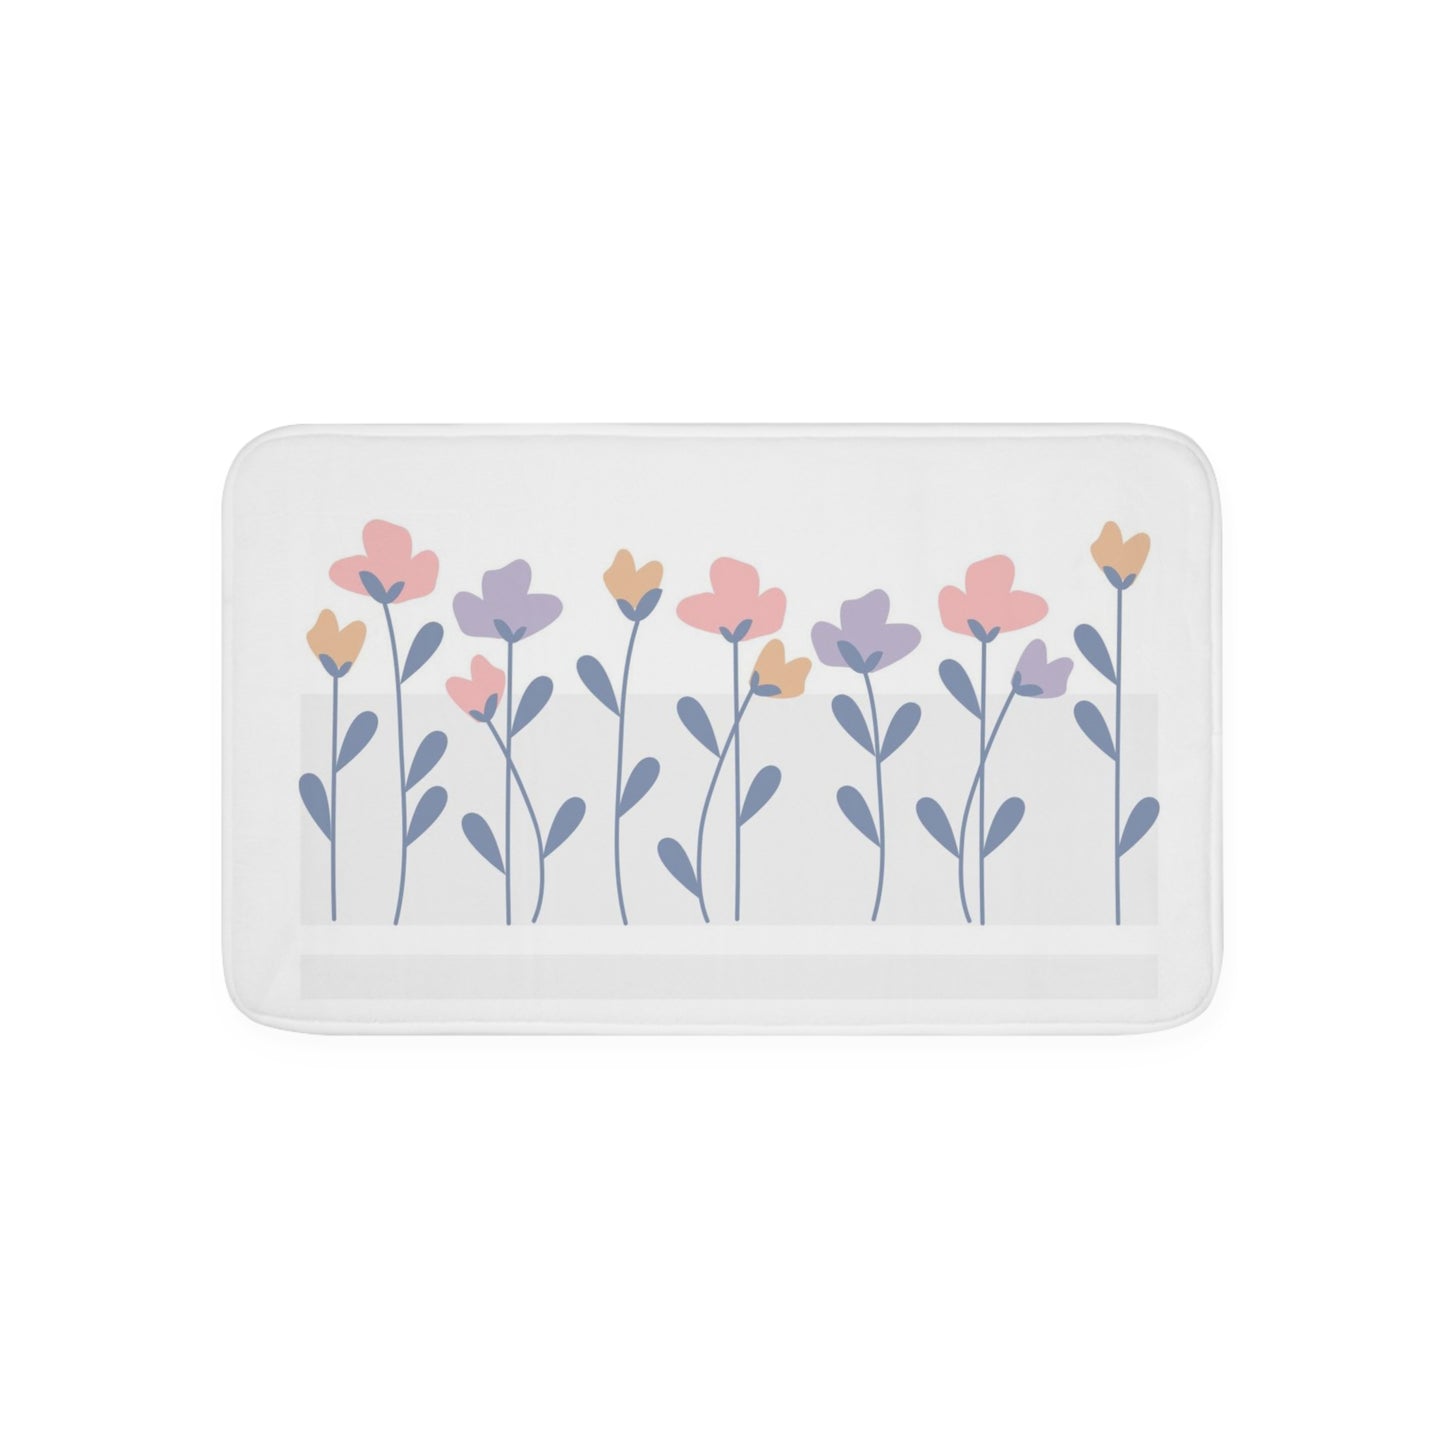 Flowers in Spring Memory Foam Bath Mat*